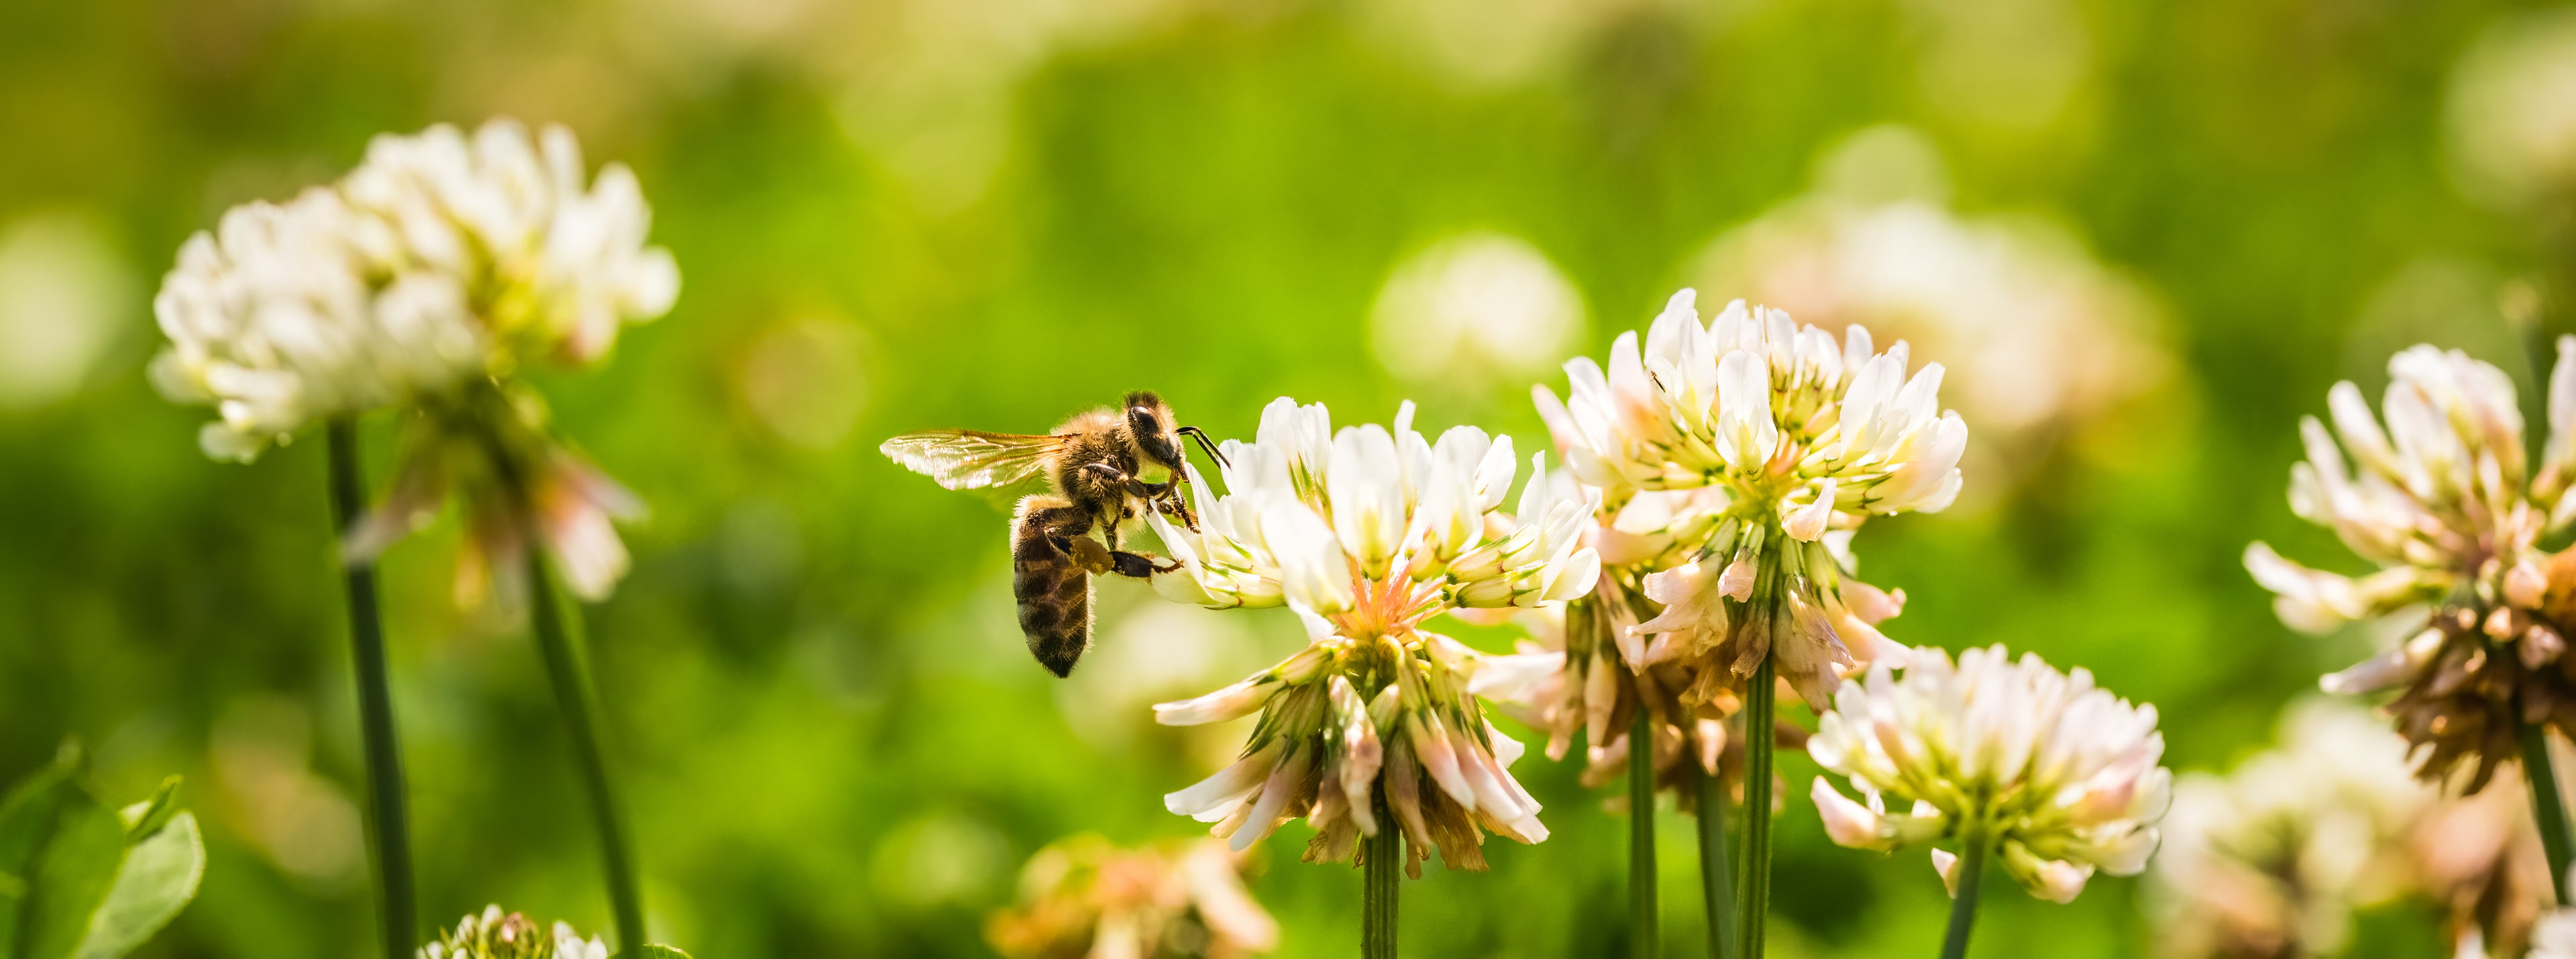 Honeybee Clover Blossom Delta Utah